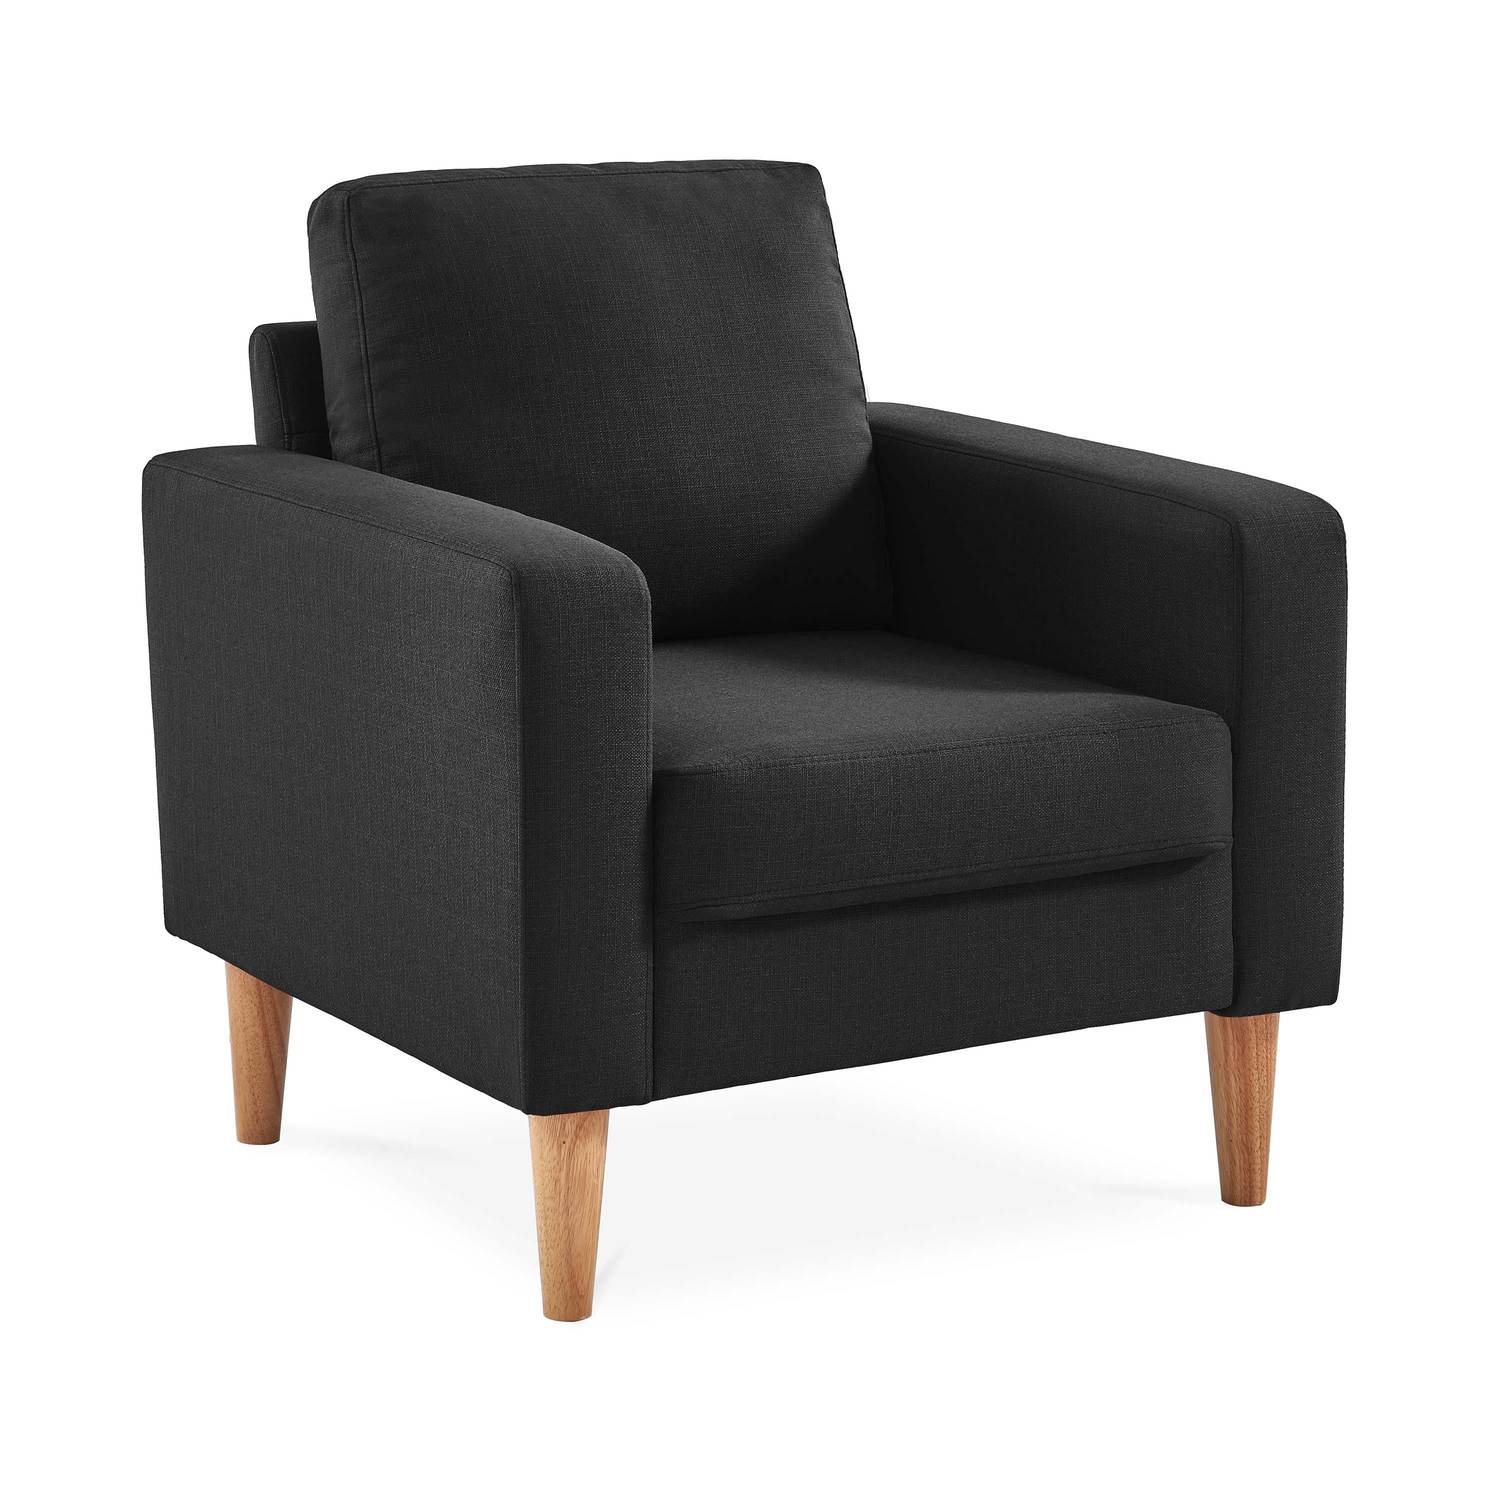 Scandi-style armchair with wooden legs - Bjorn - Dark Grey Photo2